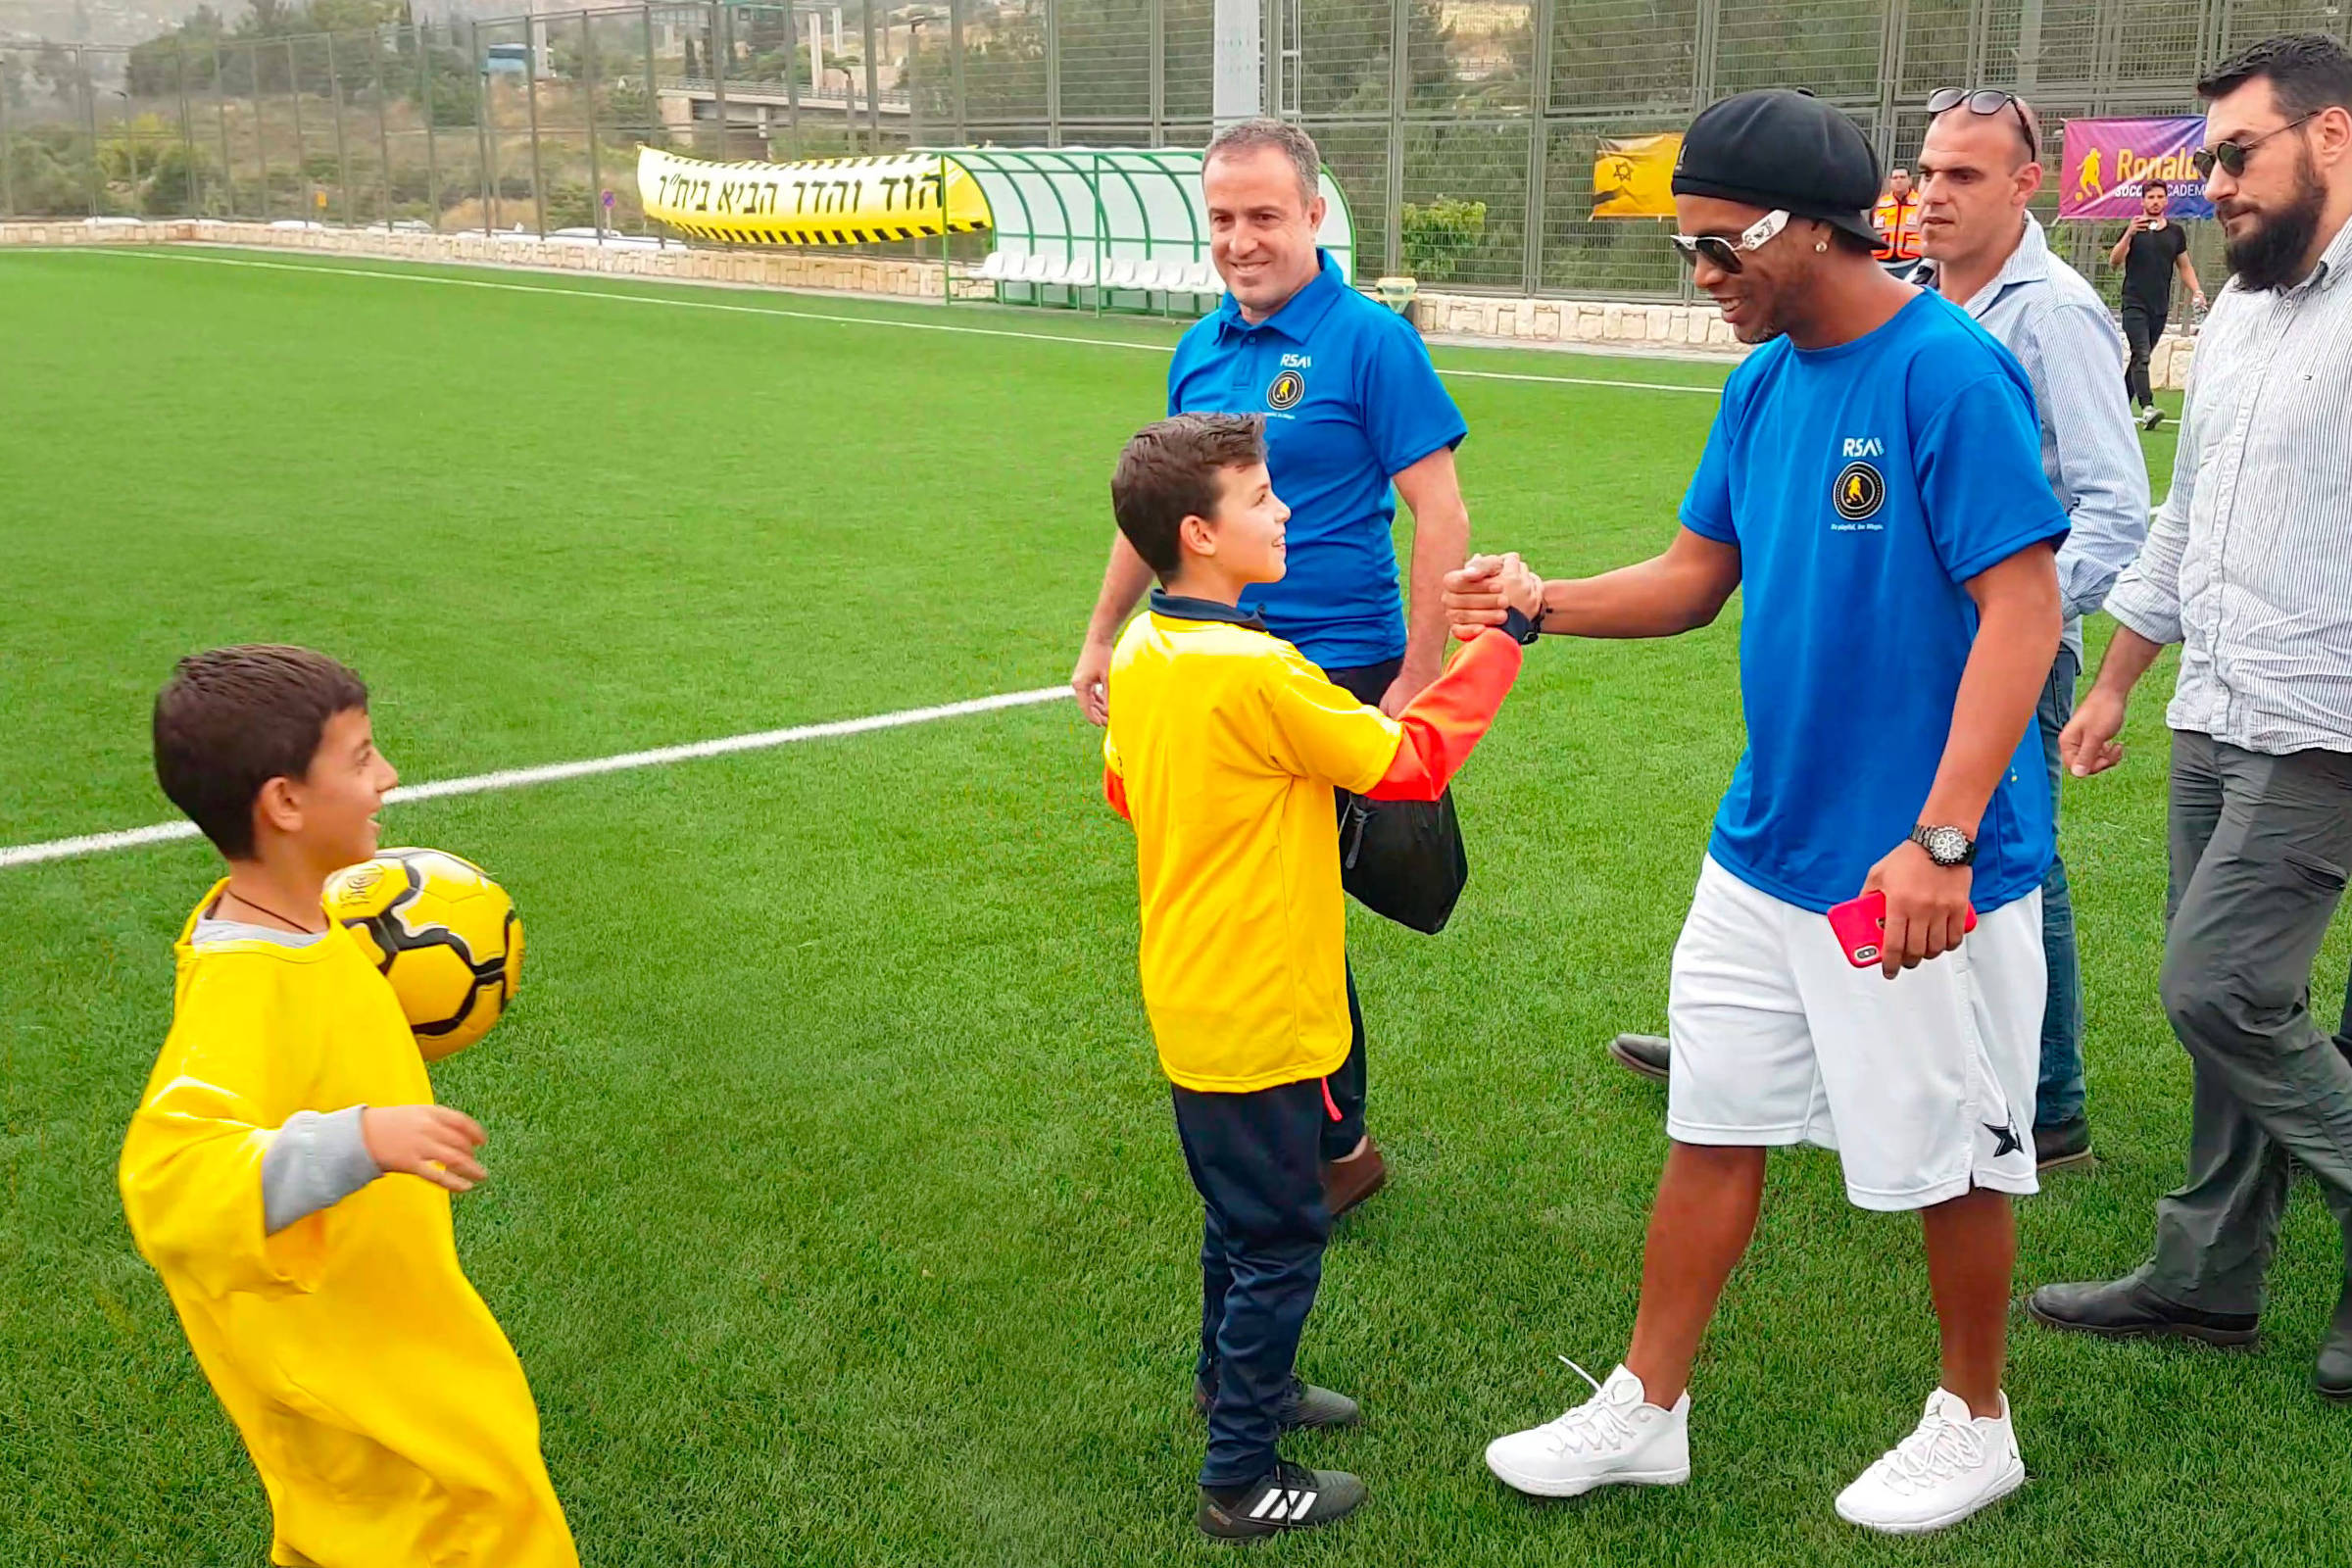 Escolinha da Ronaldinho Soccer Academy começa a funcionar em Juiz